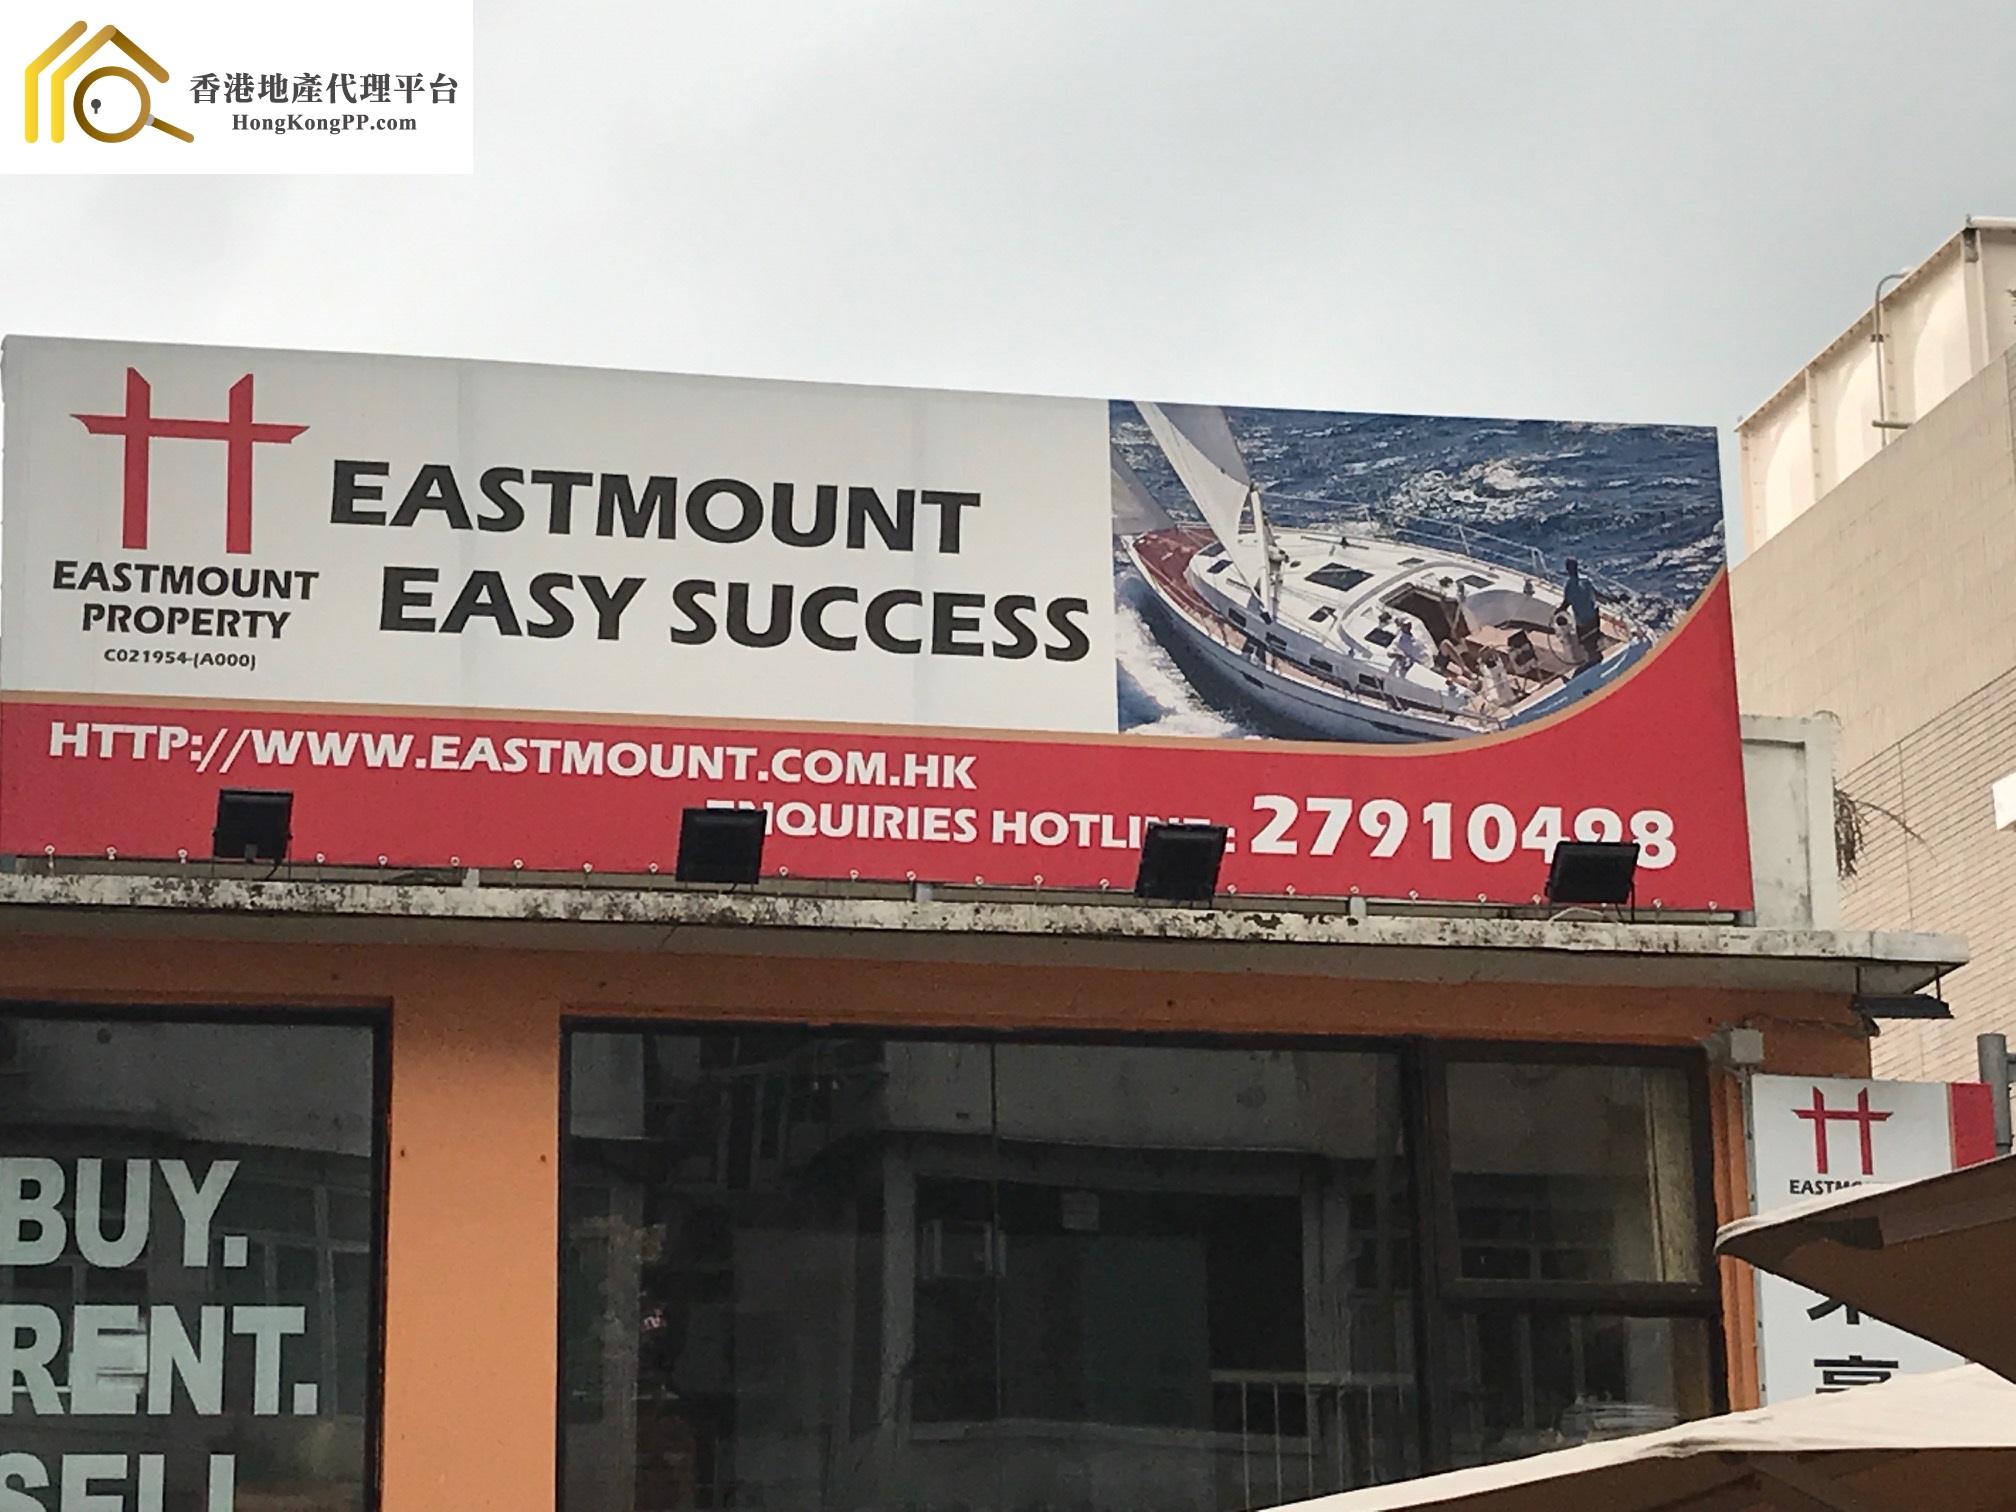 地產代理公司: Eastmount Property Agency